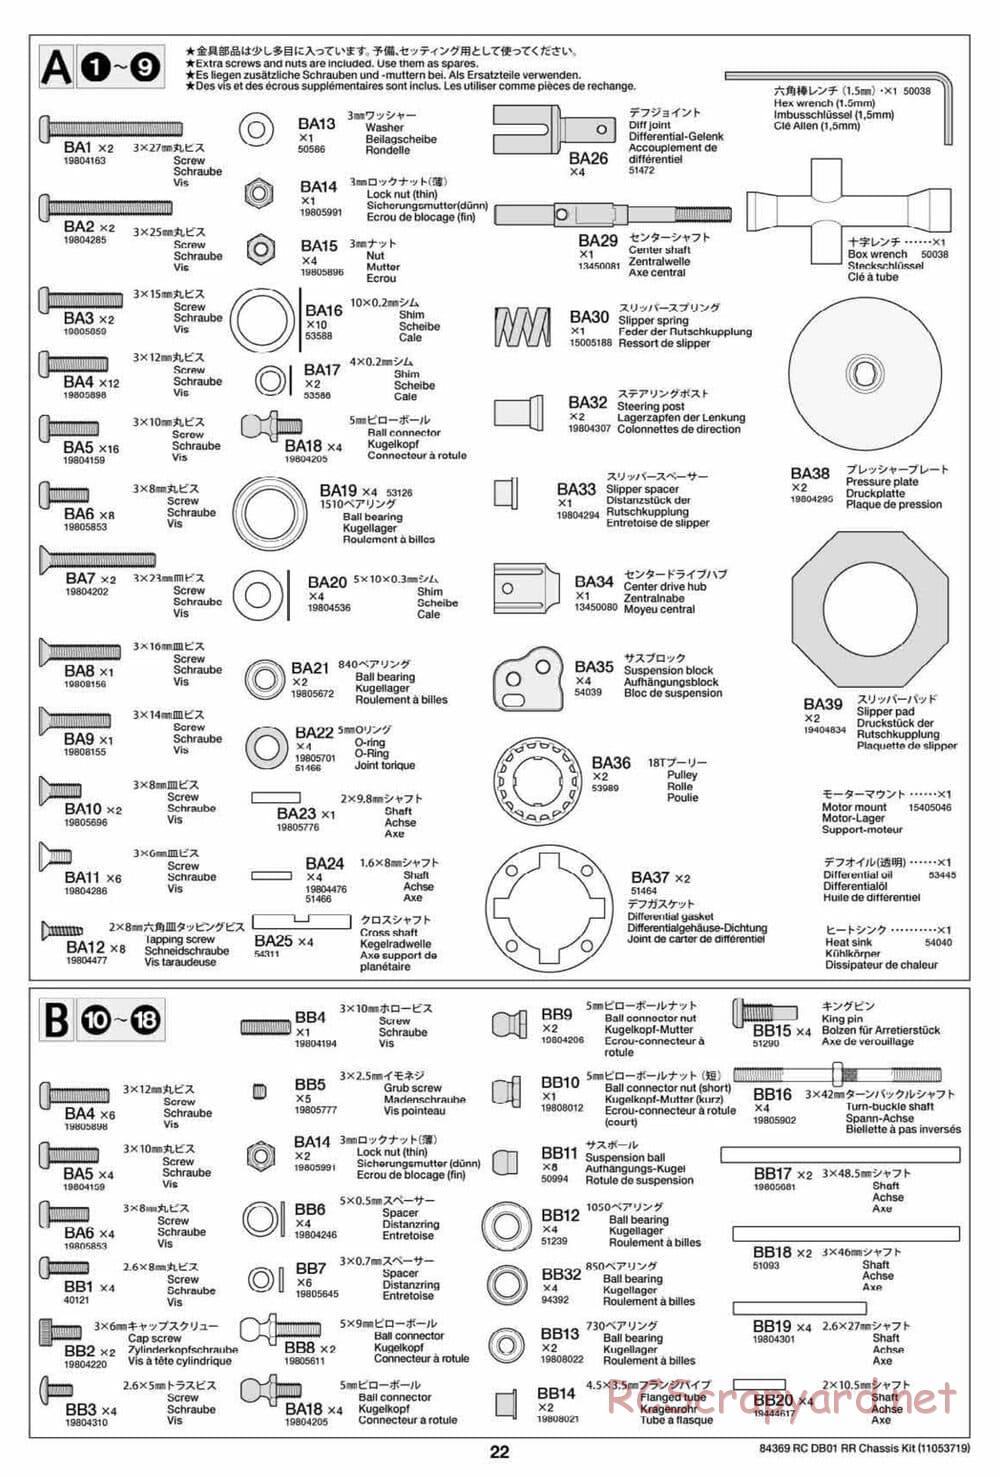 Tamiya - DB-01 RR Chassis - Manual - Page 22